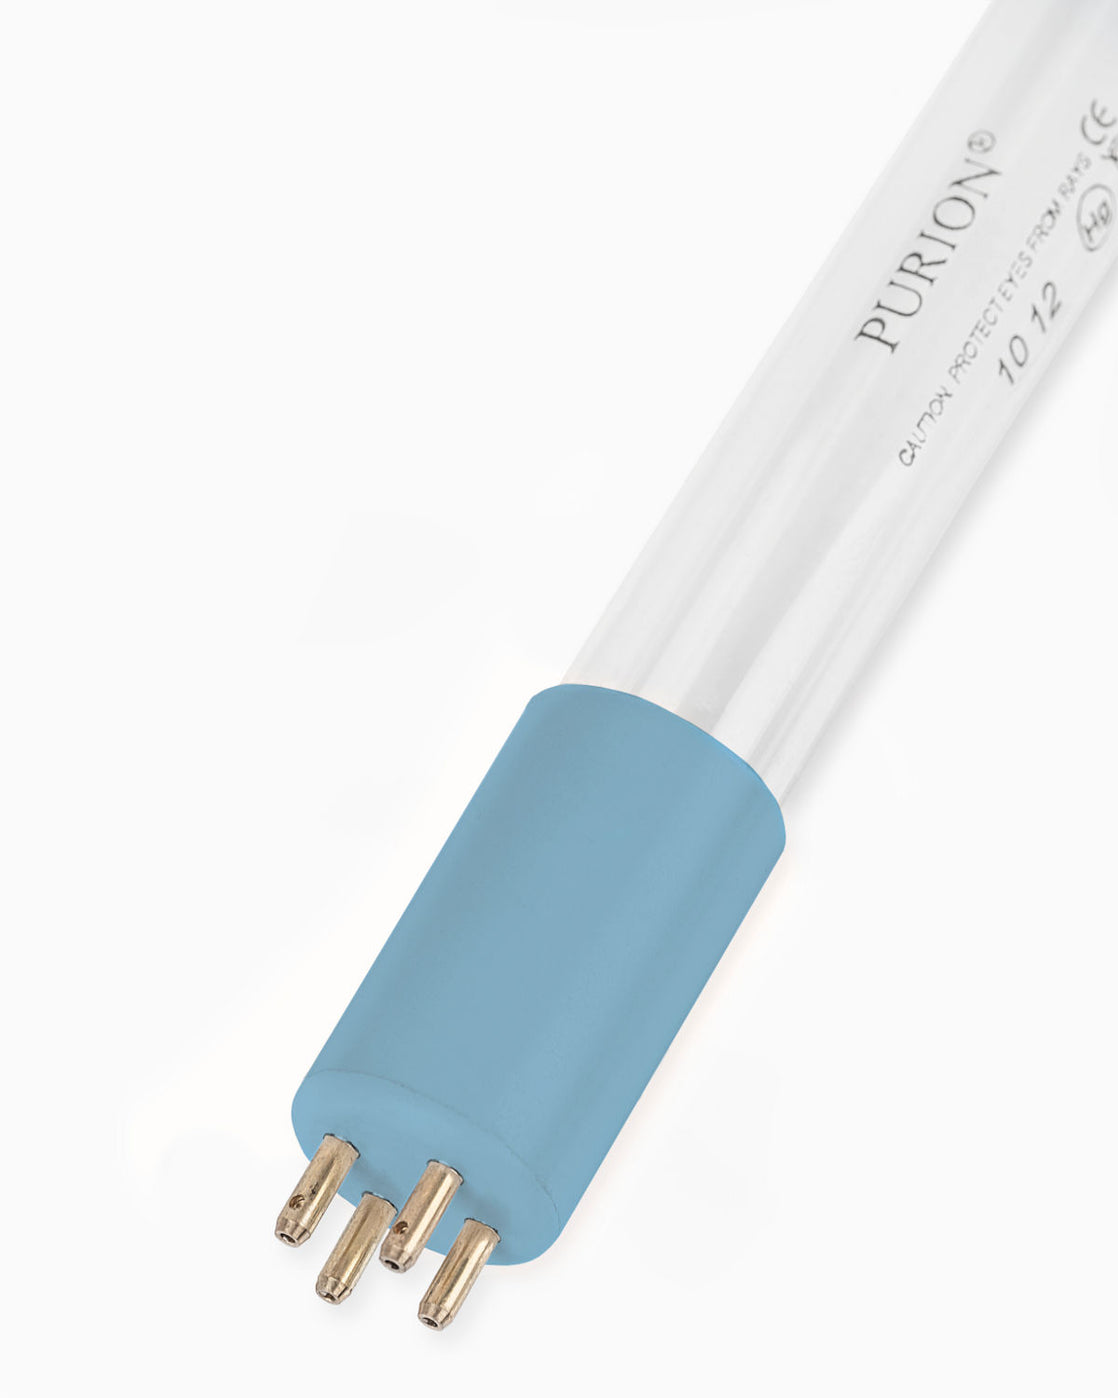 Eine AIRPURION DUO 90/39 UV-C-Desinfektionslampe, die blaues Licht auf weißem Hintergrund ausstrahlt, hergestellt von der PURION GmbH.